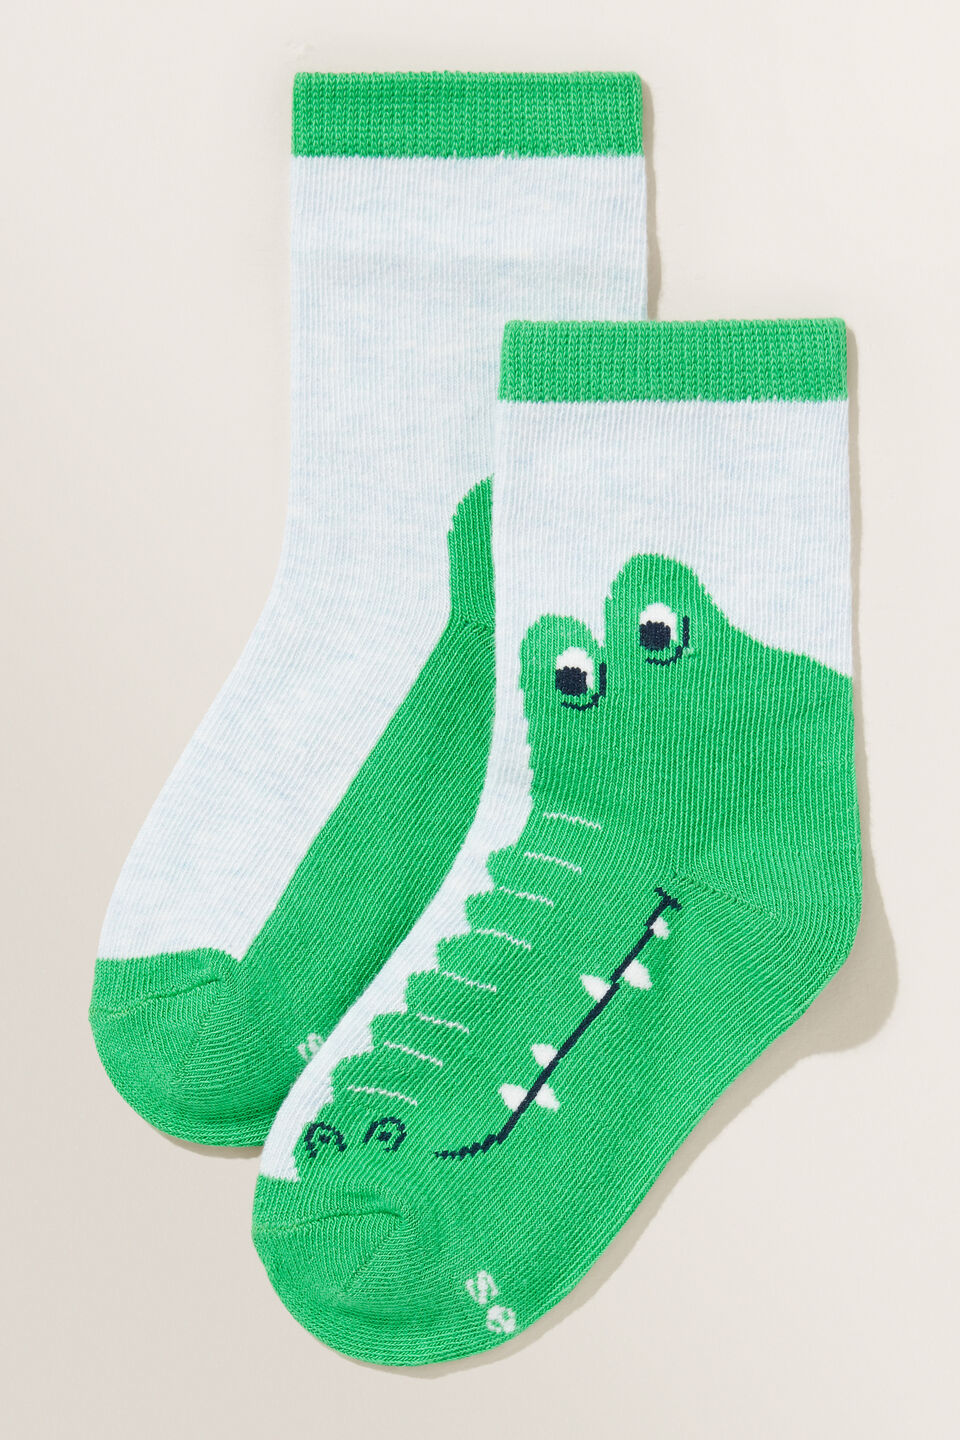 Crocodile Socks  Multi